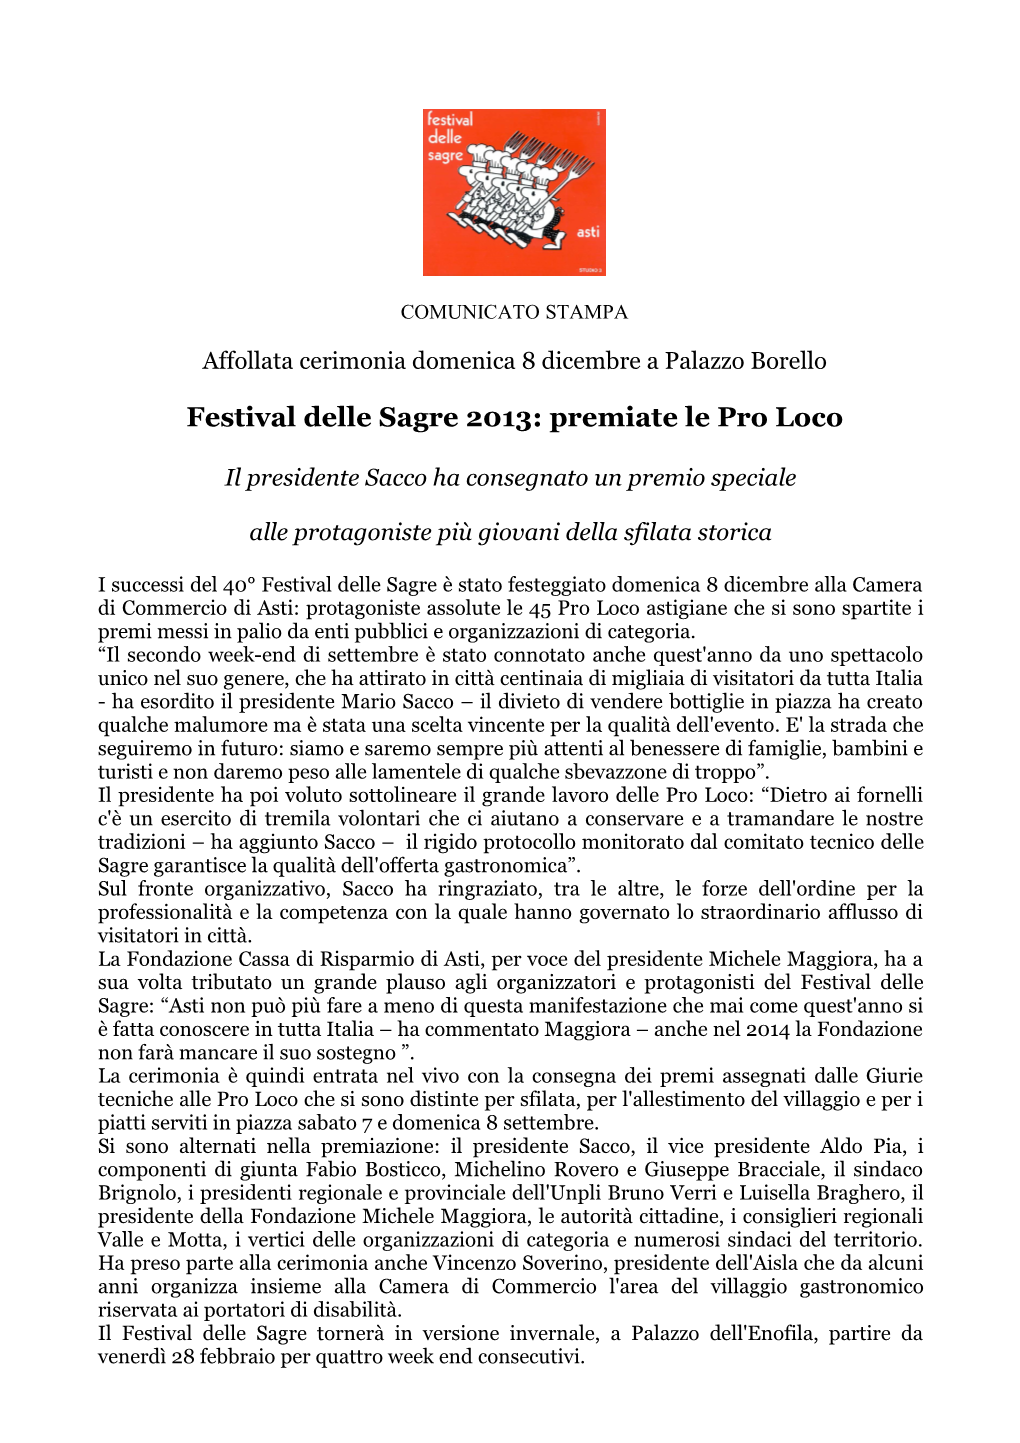 Festival Delle Sagre 2013: Premiate Le Pro Loco